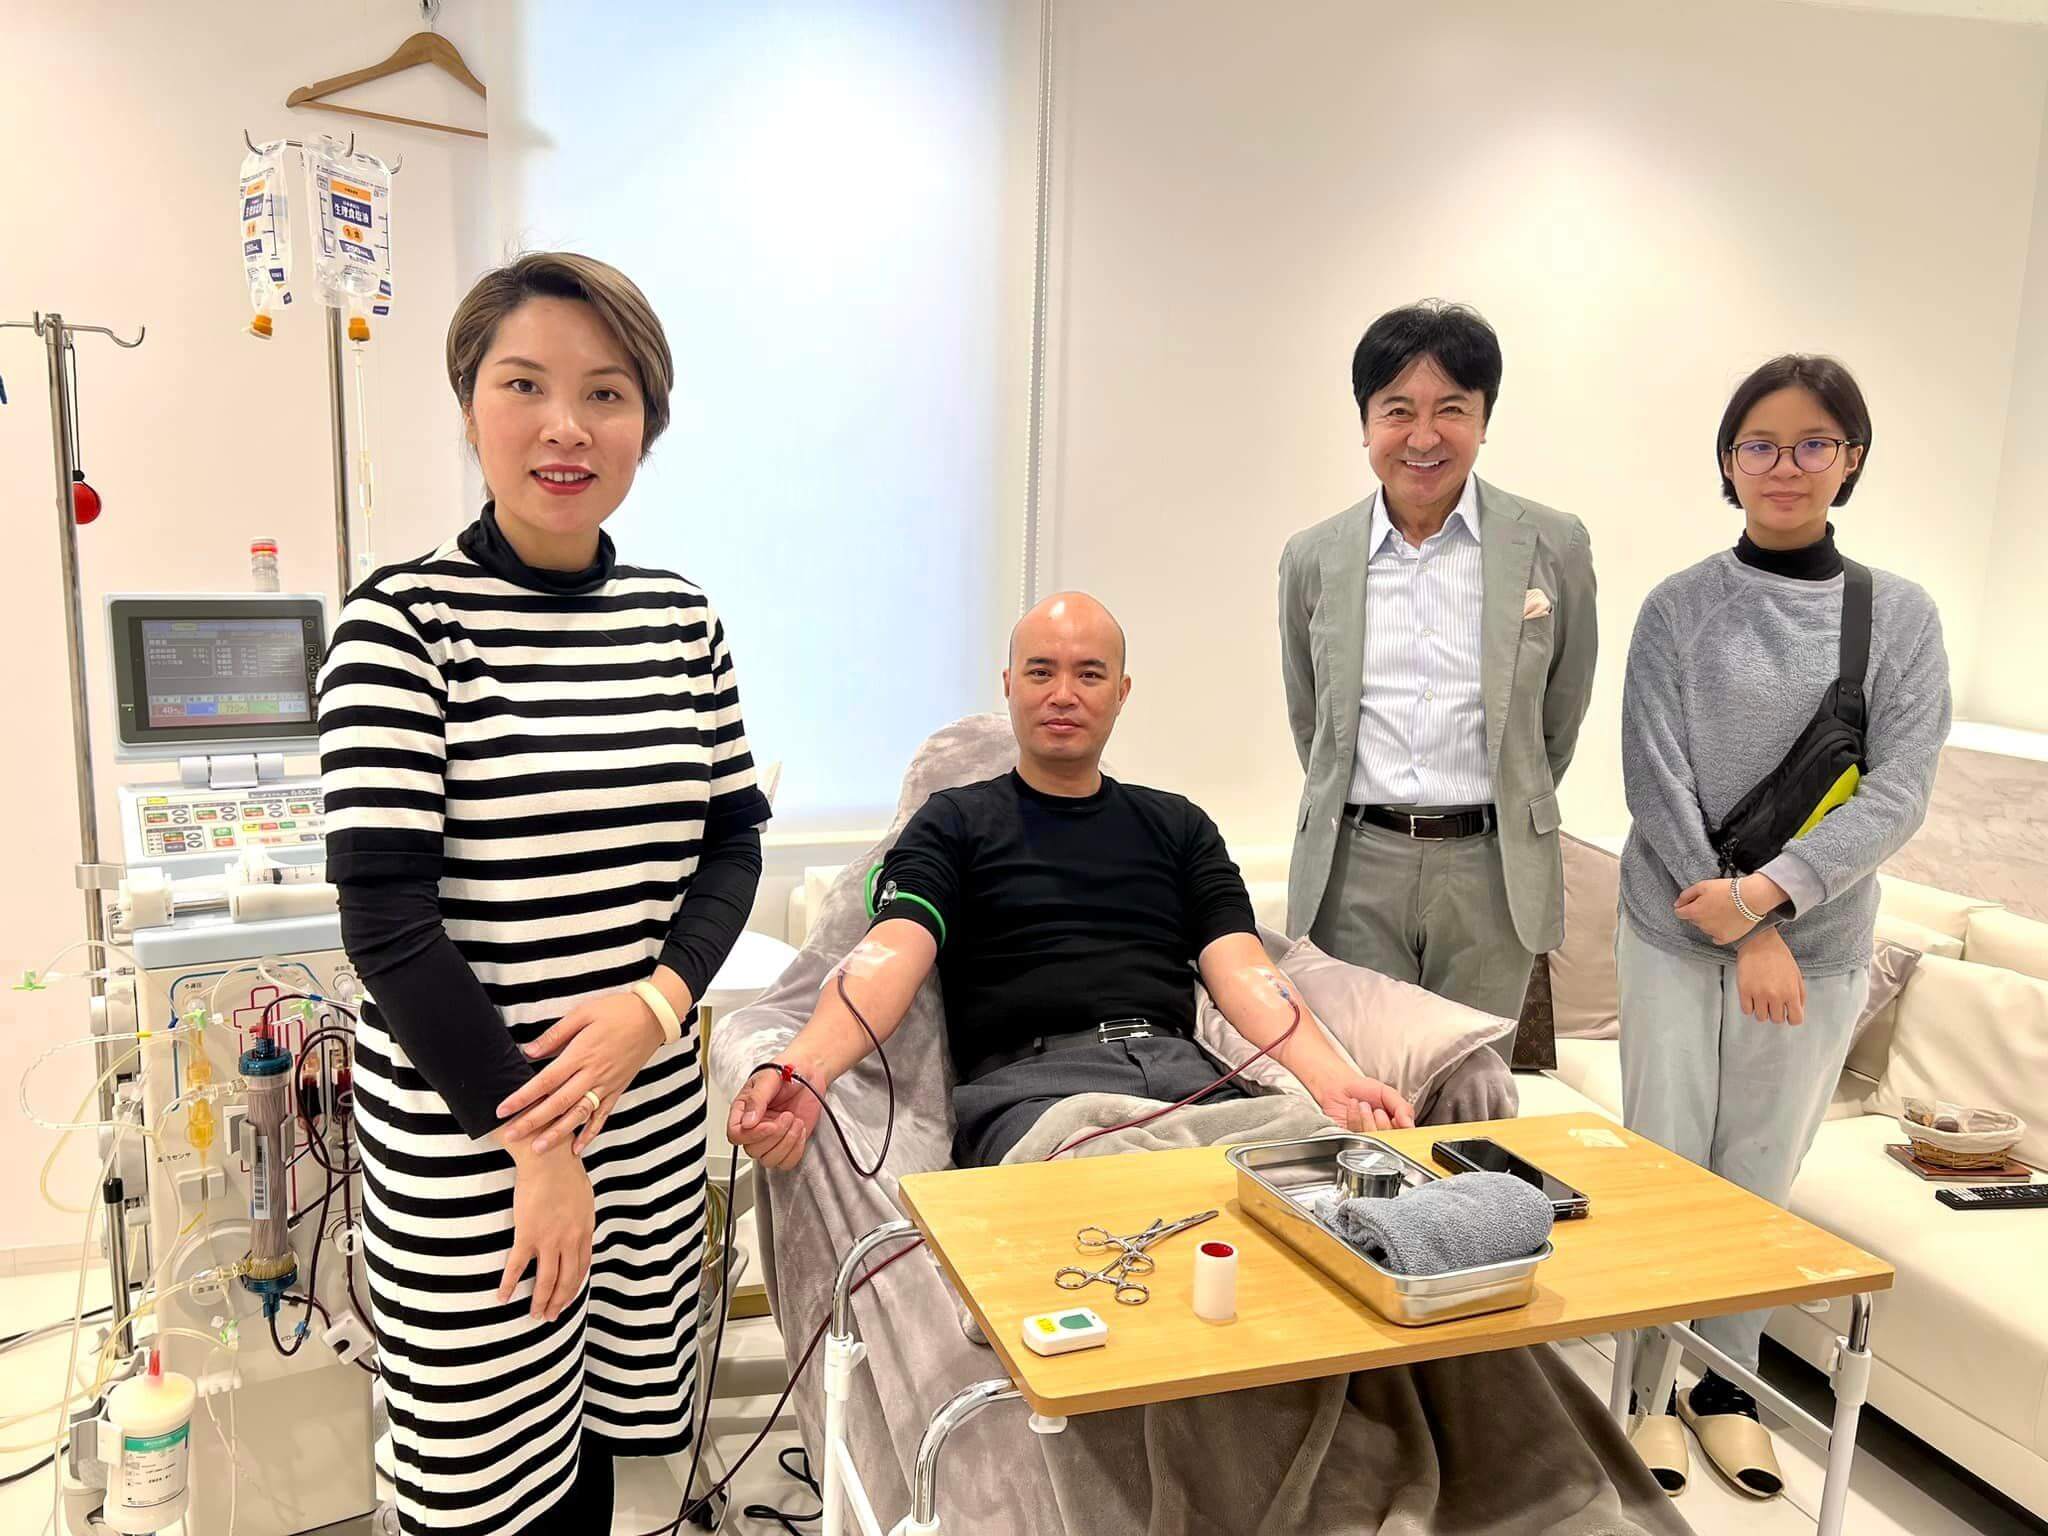 anh Bùi Ngọc Sơn đang thực hiện liệu pháp lọc máu tại Nhật Bản